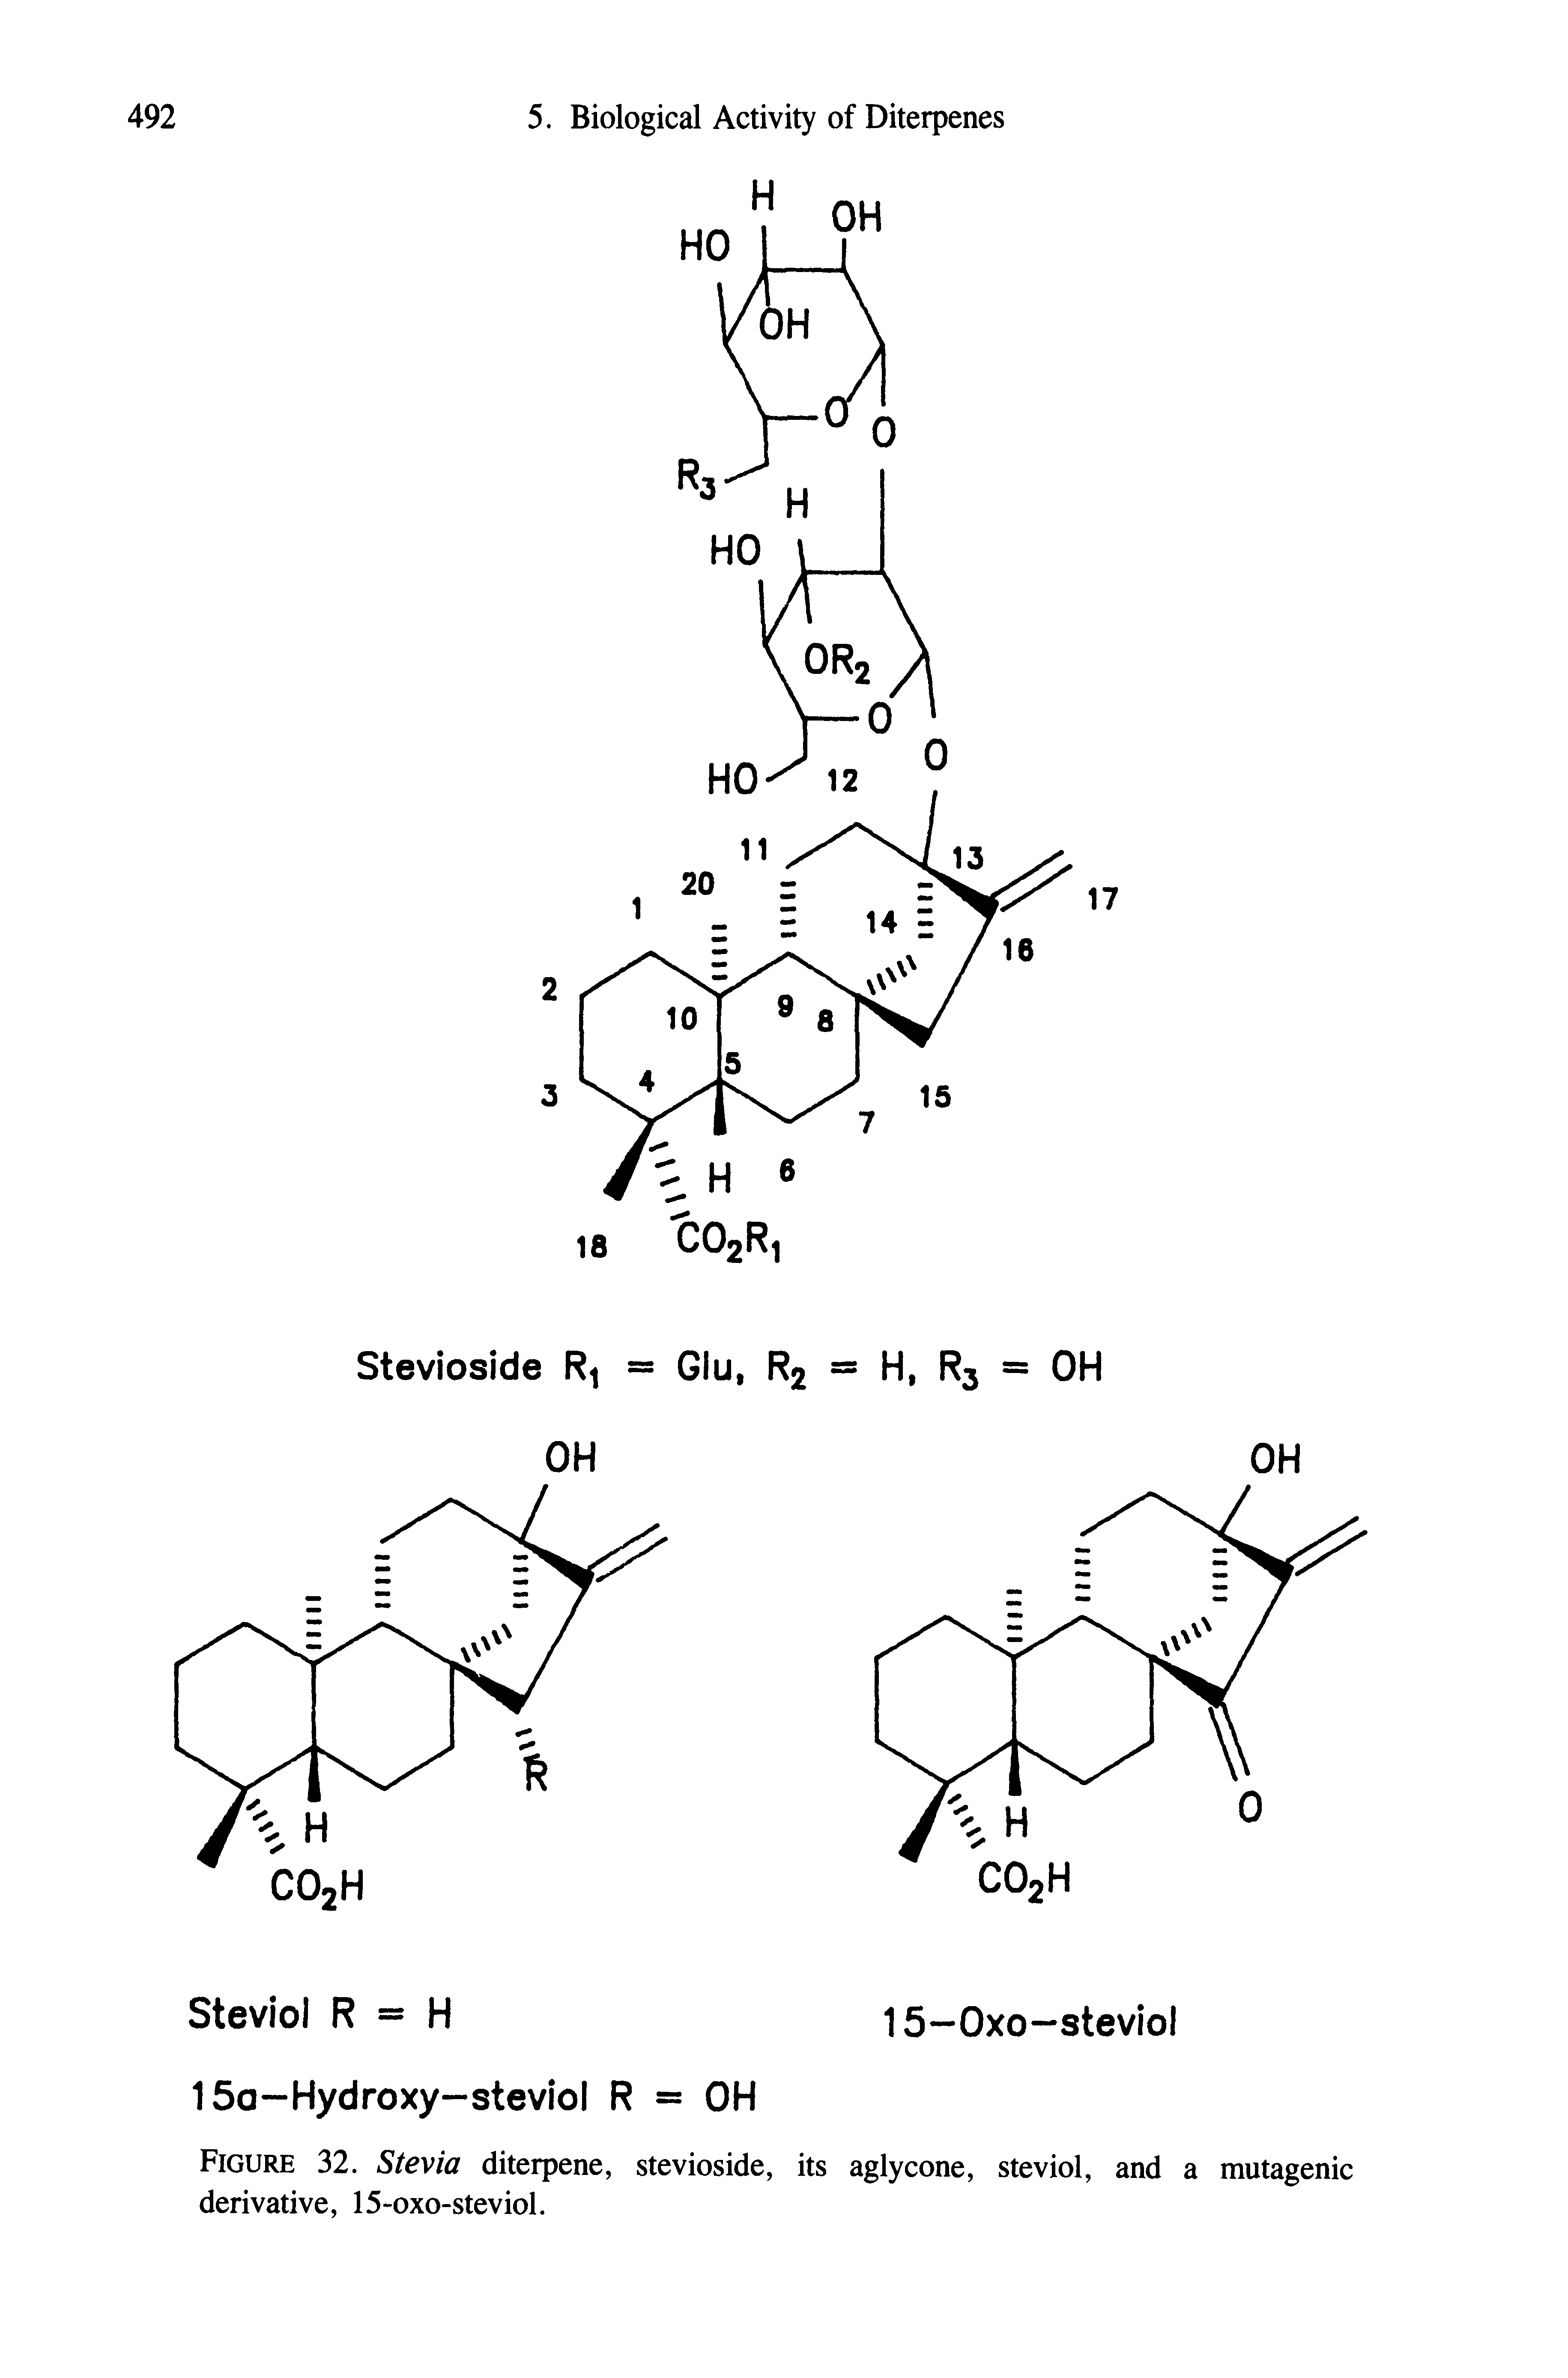 Figure 32. Stevia diterpene, stevioside, its aglycone, steviol, and a mutagenic derivative, 15-oxo-steviol.